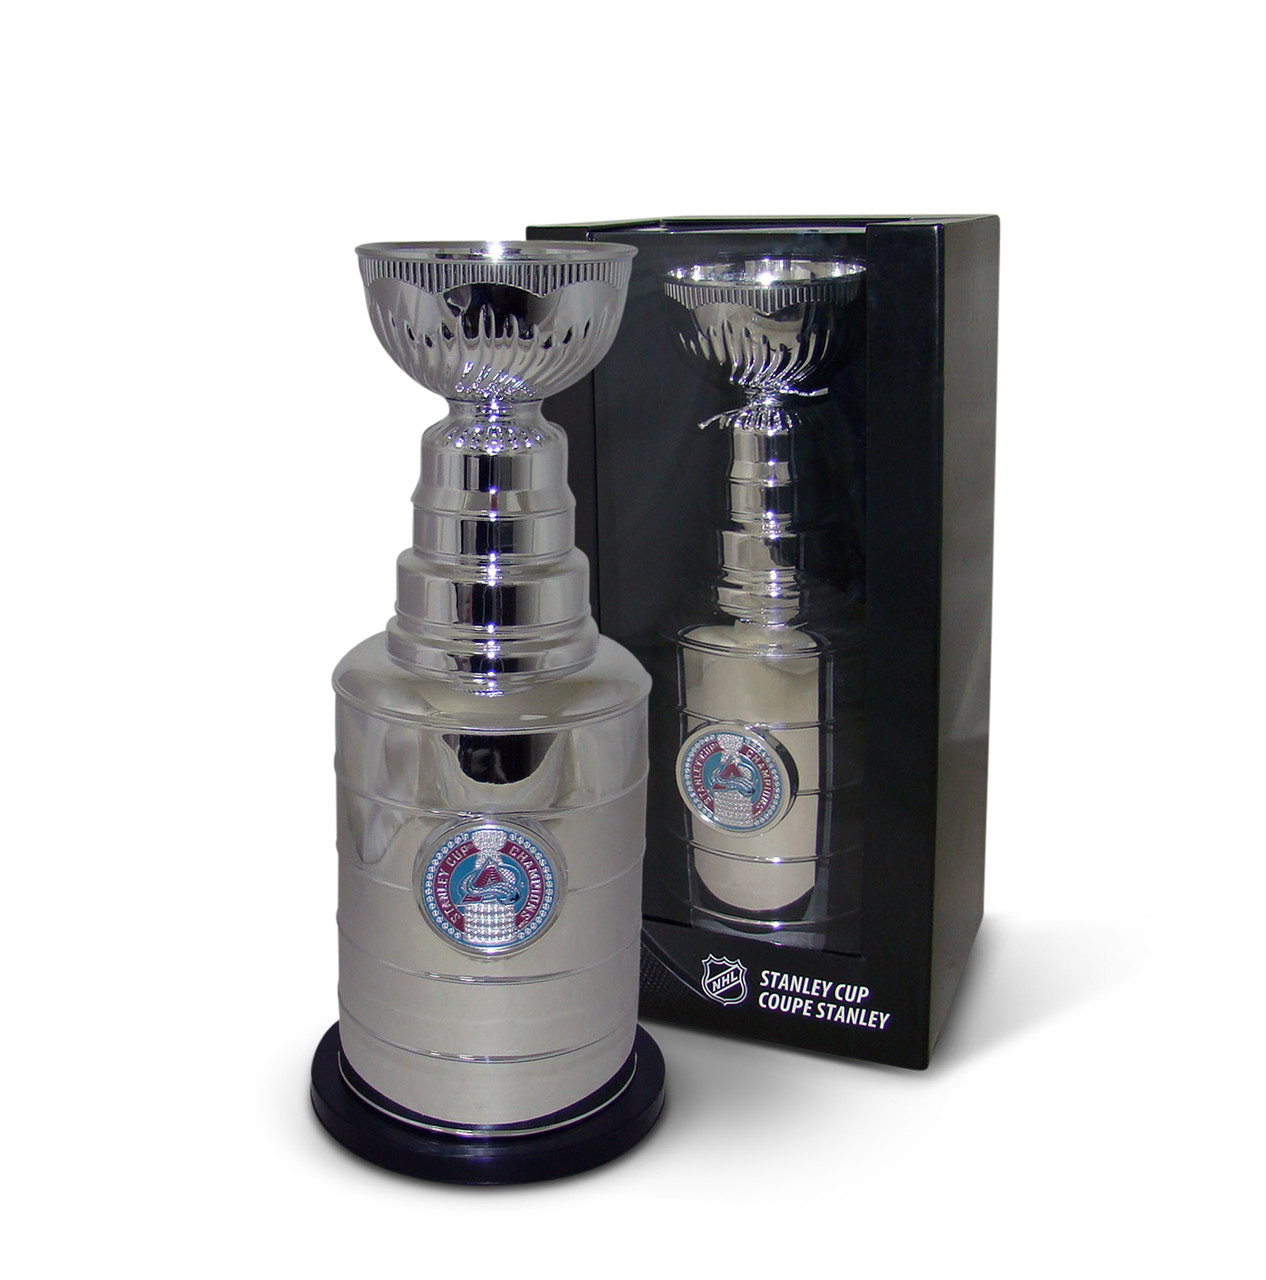 Stanley Cup Replica Trophy